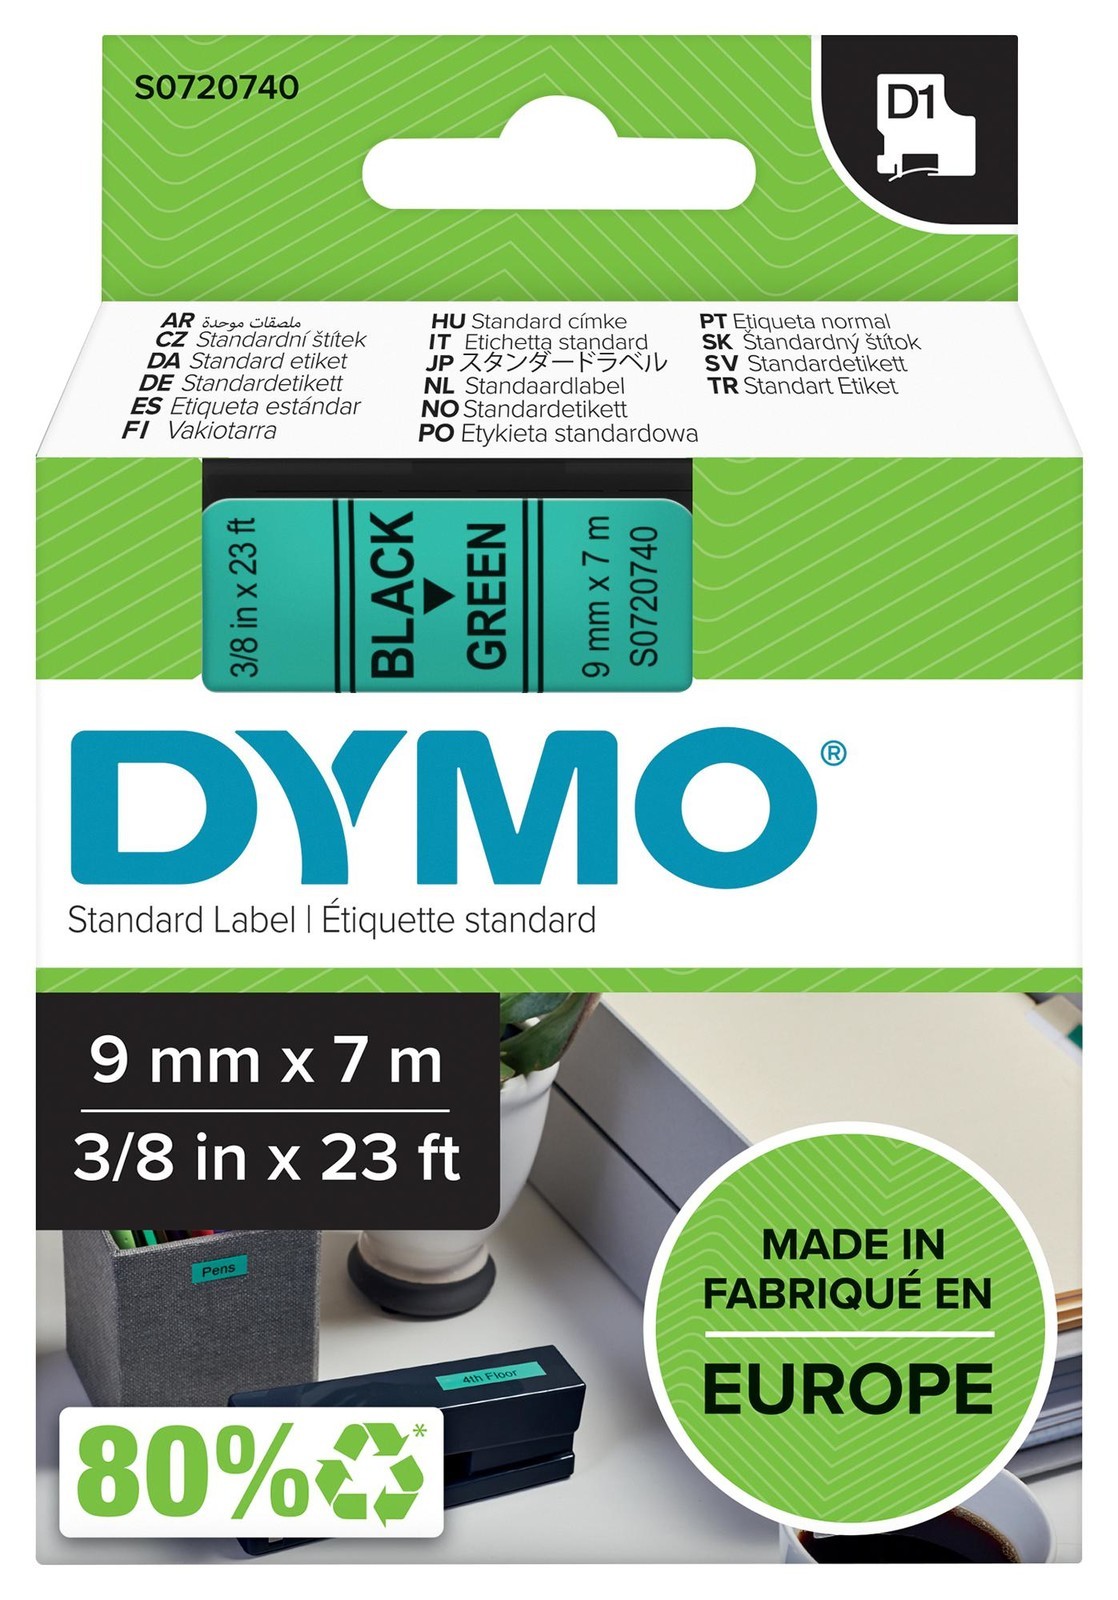 Dymo 40919 Tape, Black/green, 9mm